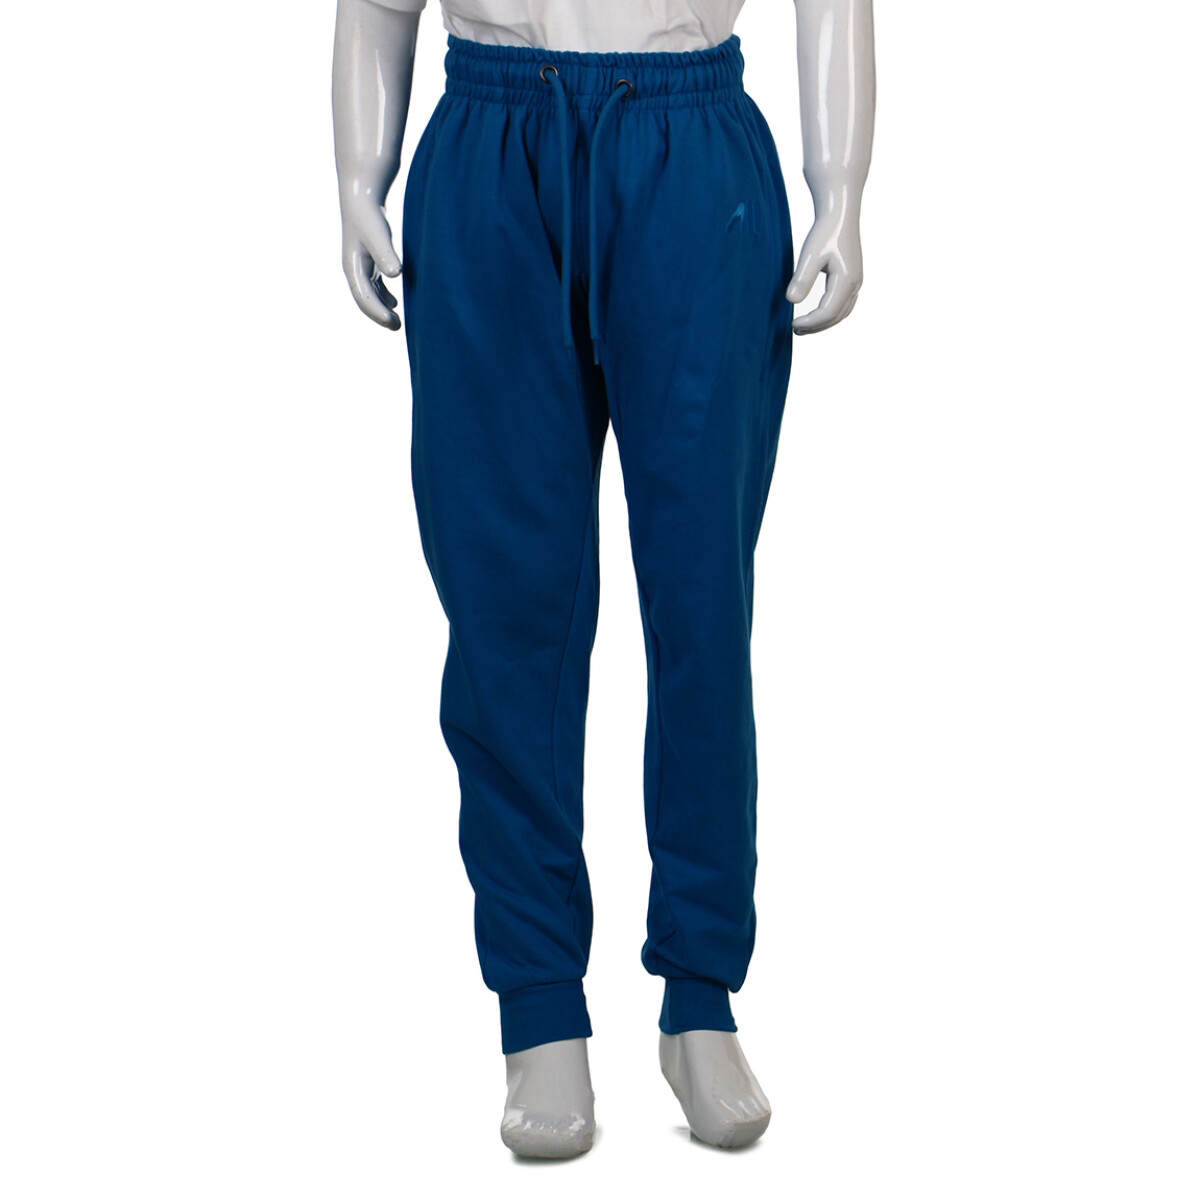 Austral Boy Cotton Jogging Pant- Blue - Azul 